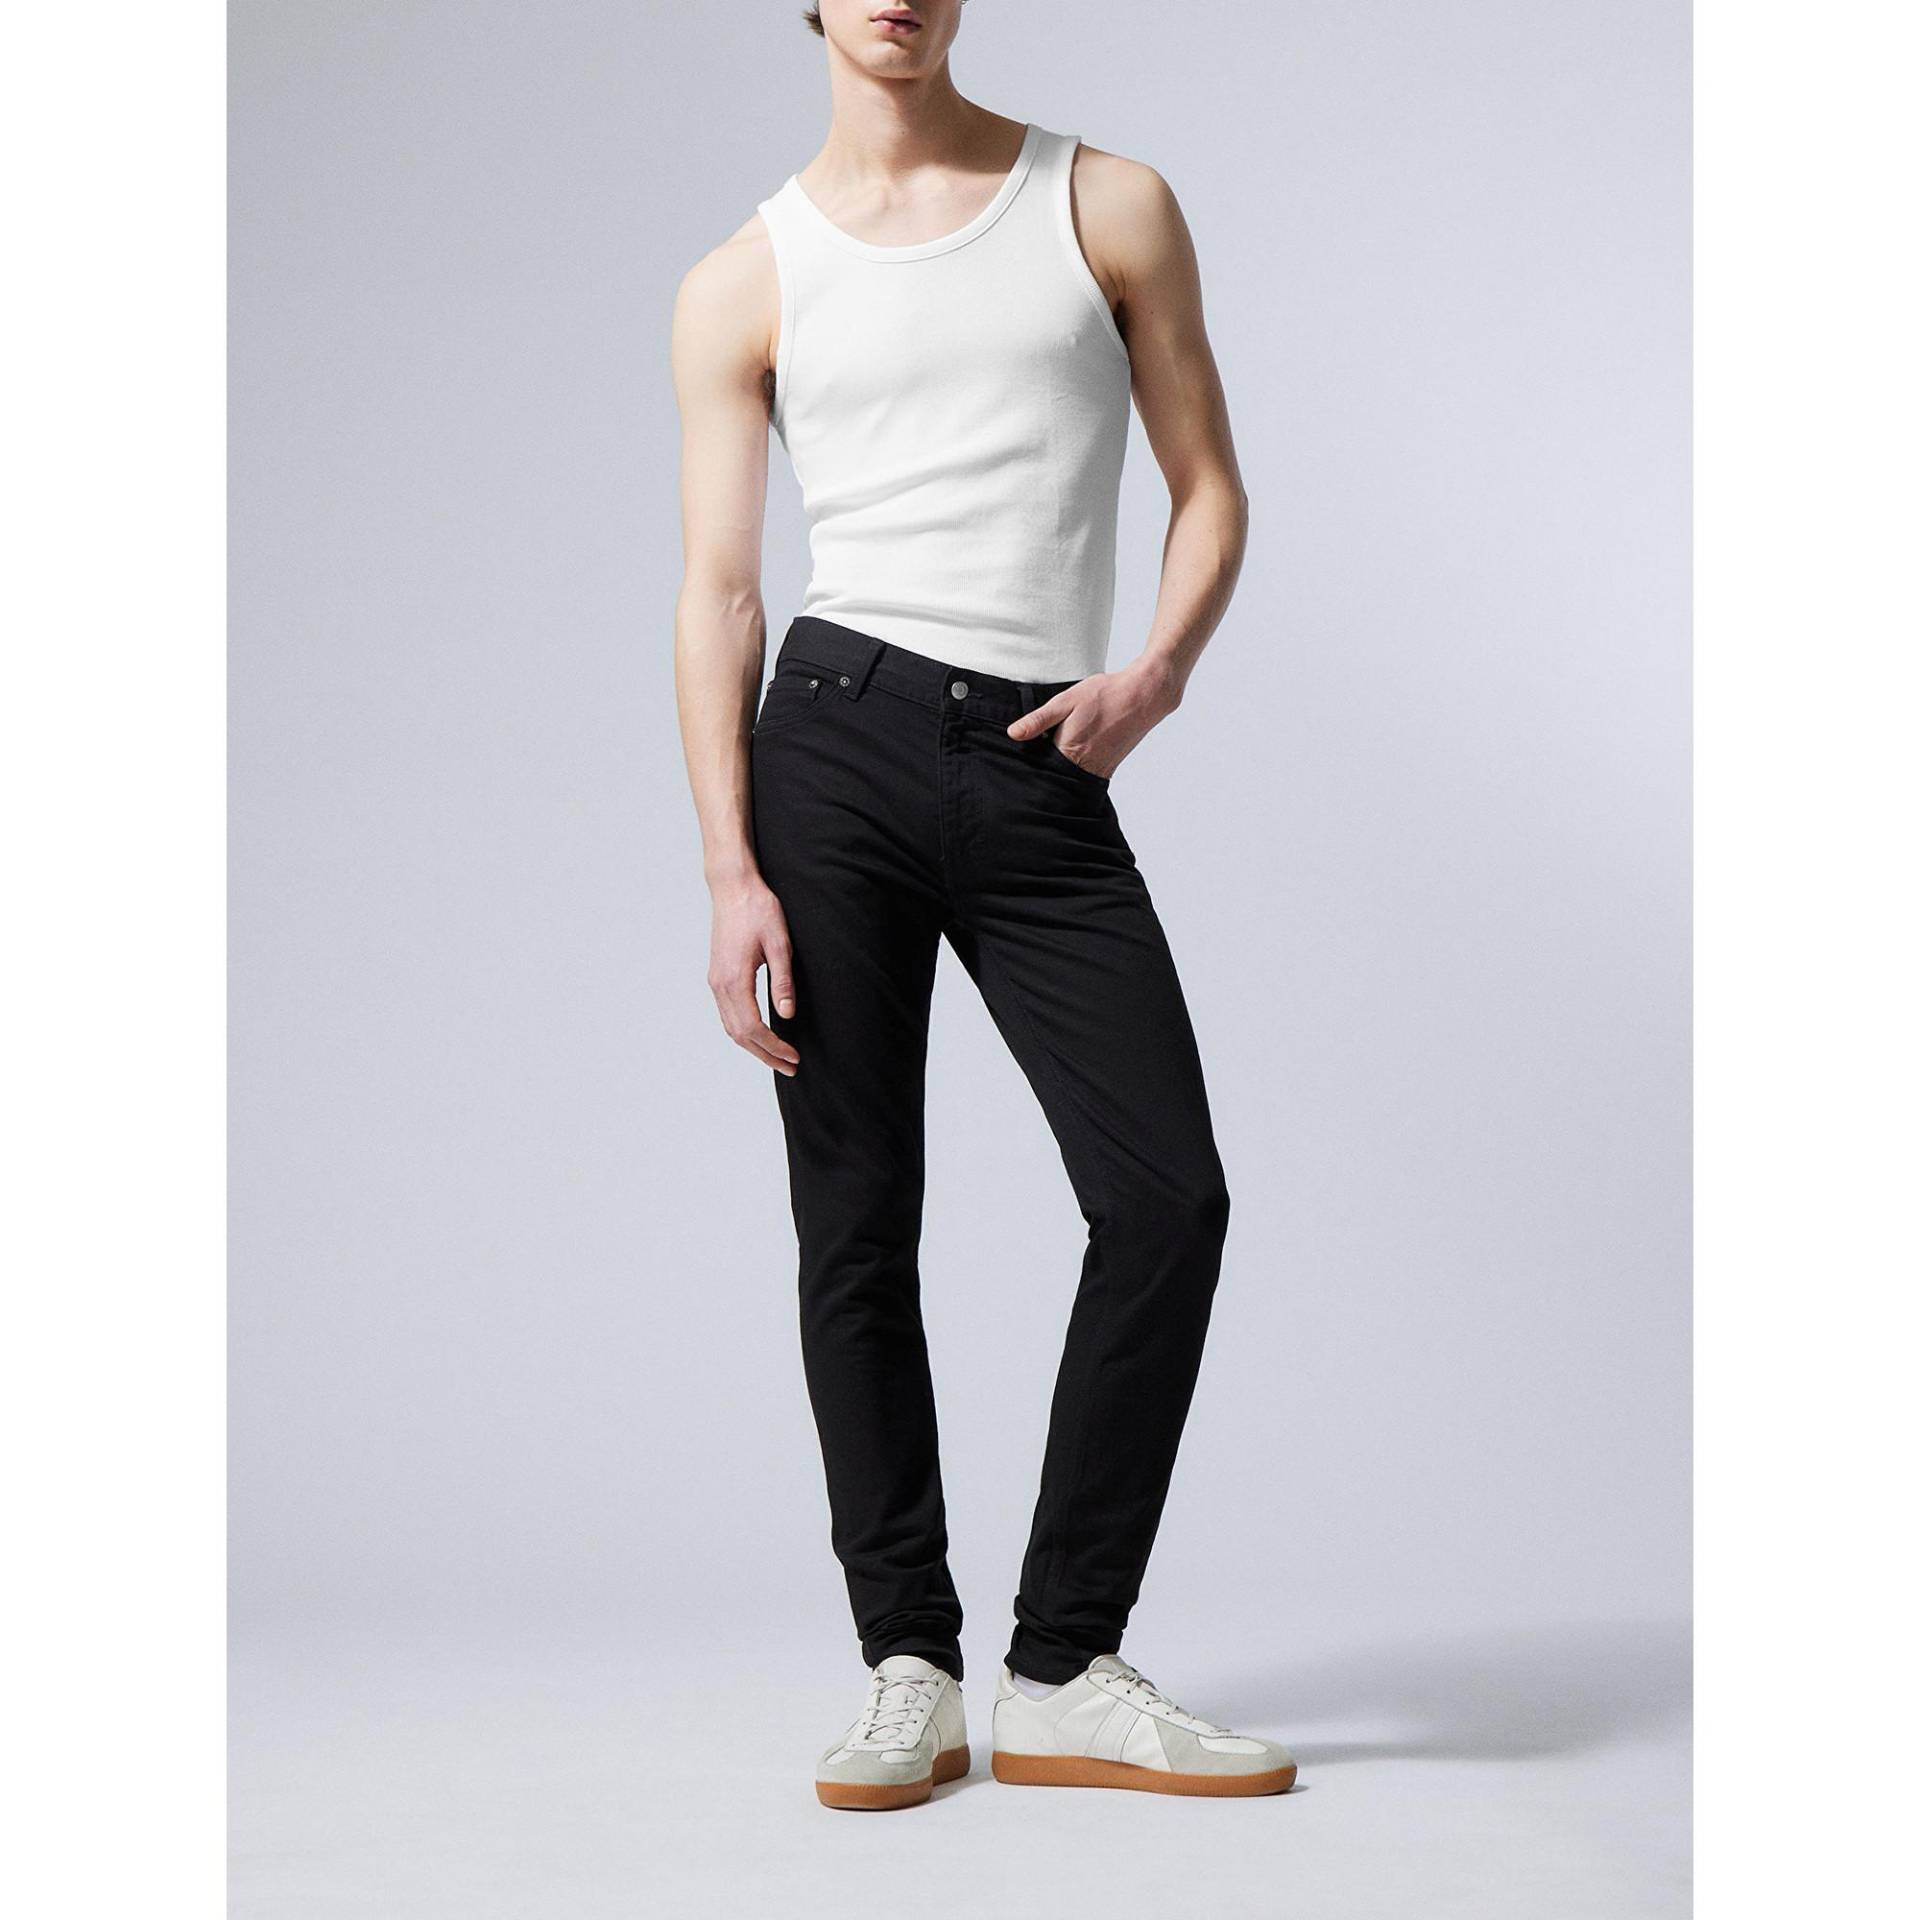 Jeans, Skinny Fit Herren Black L30/W32 von WEEKDAY